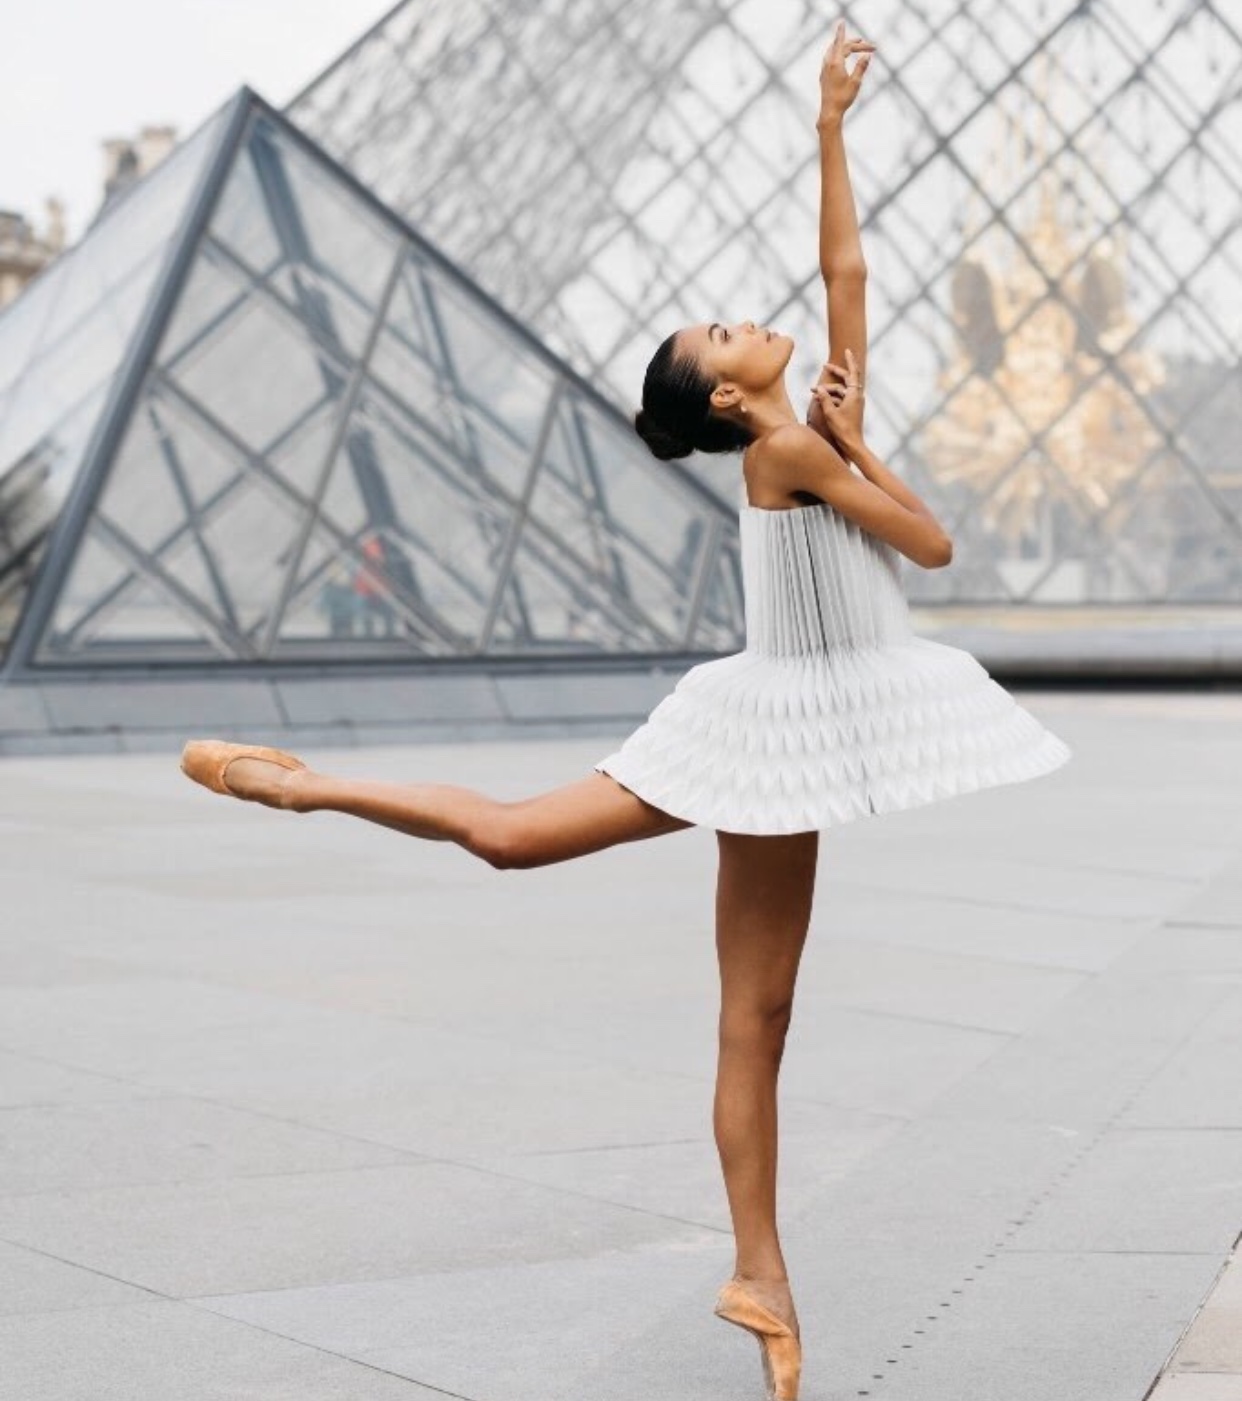 Miss Cloudy, danseuse de ballet, se produit avec grâce devant le Louvre.